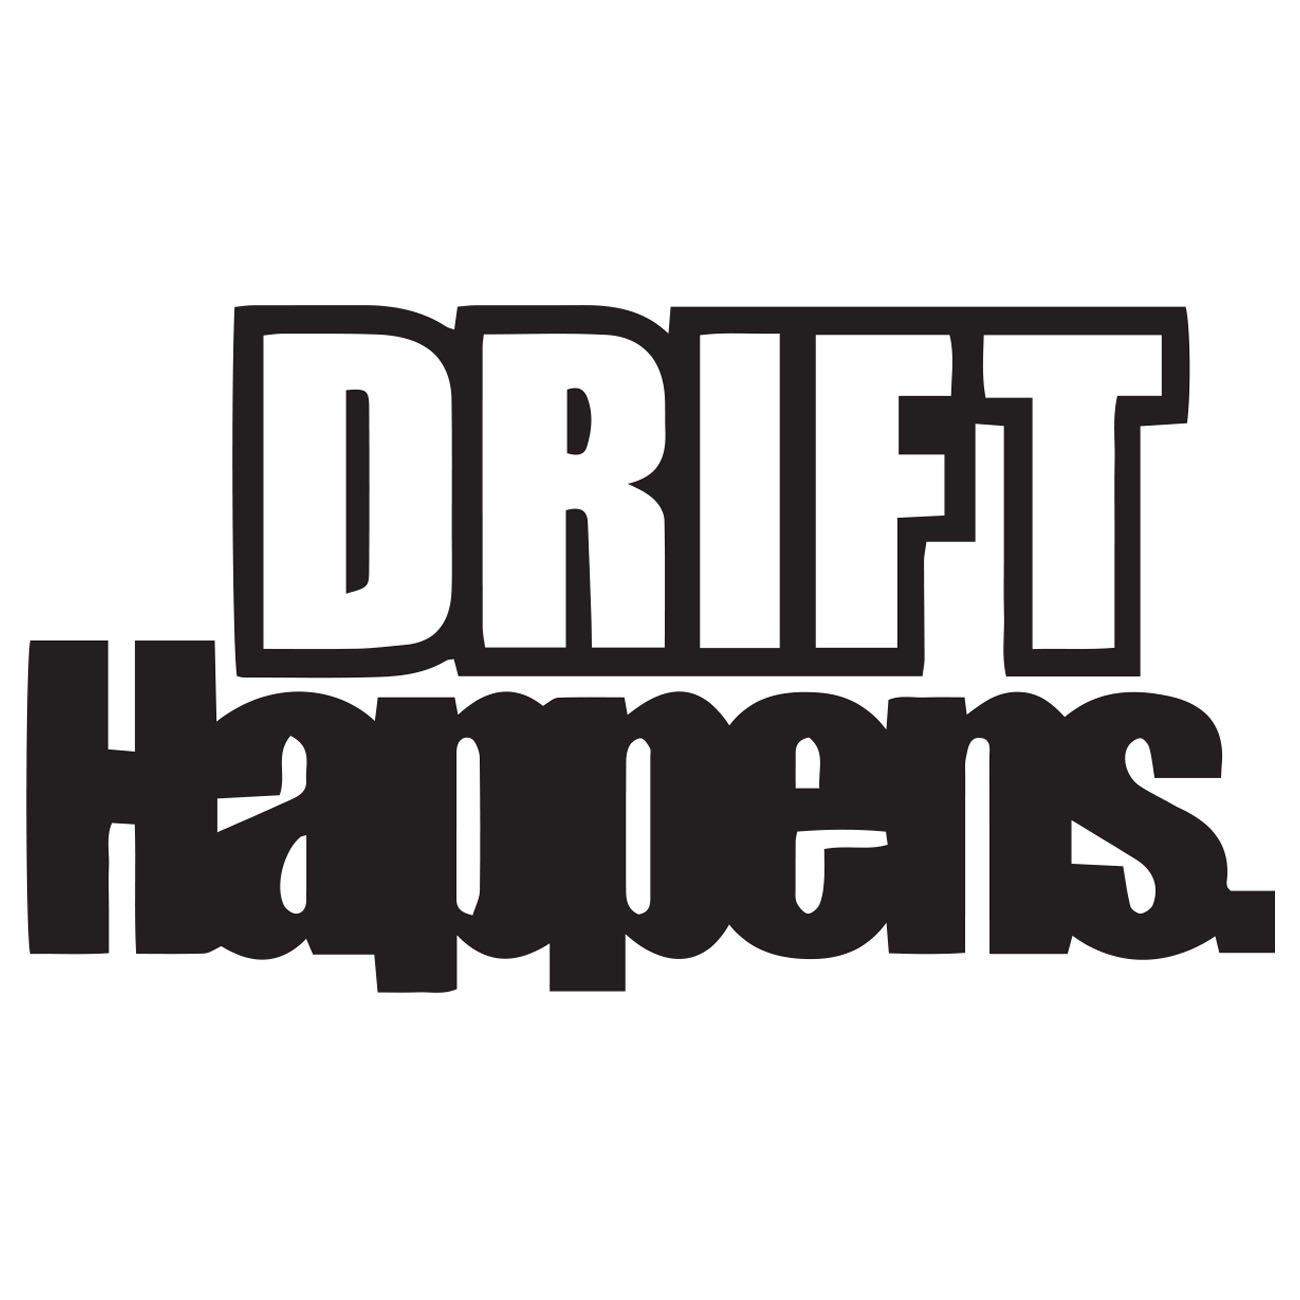 Drift happens